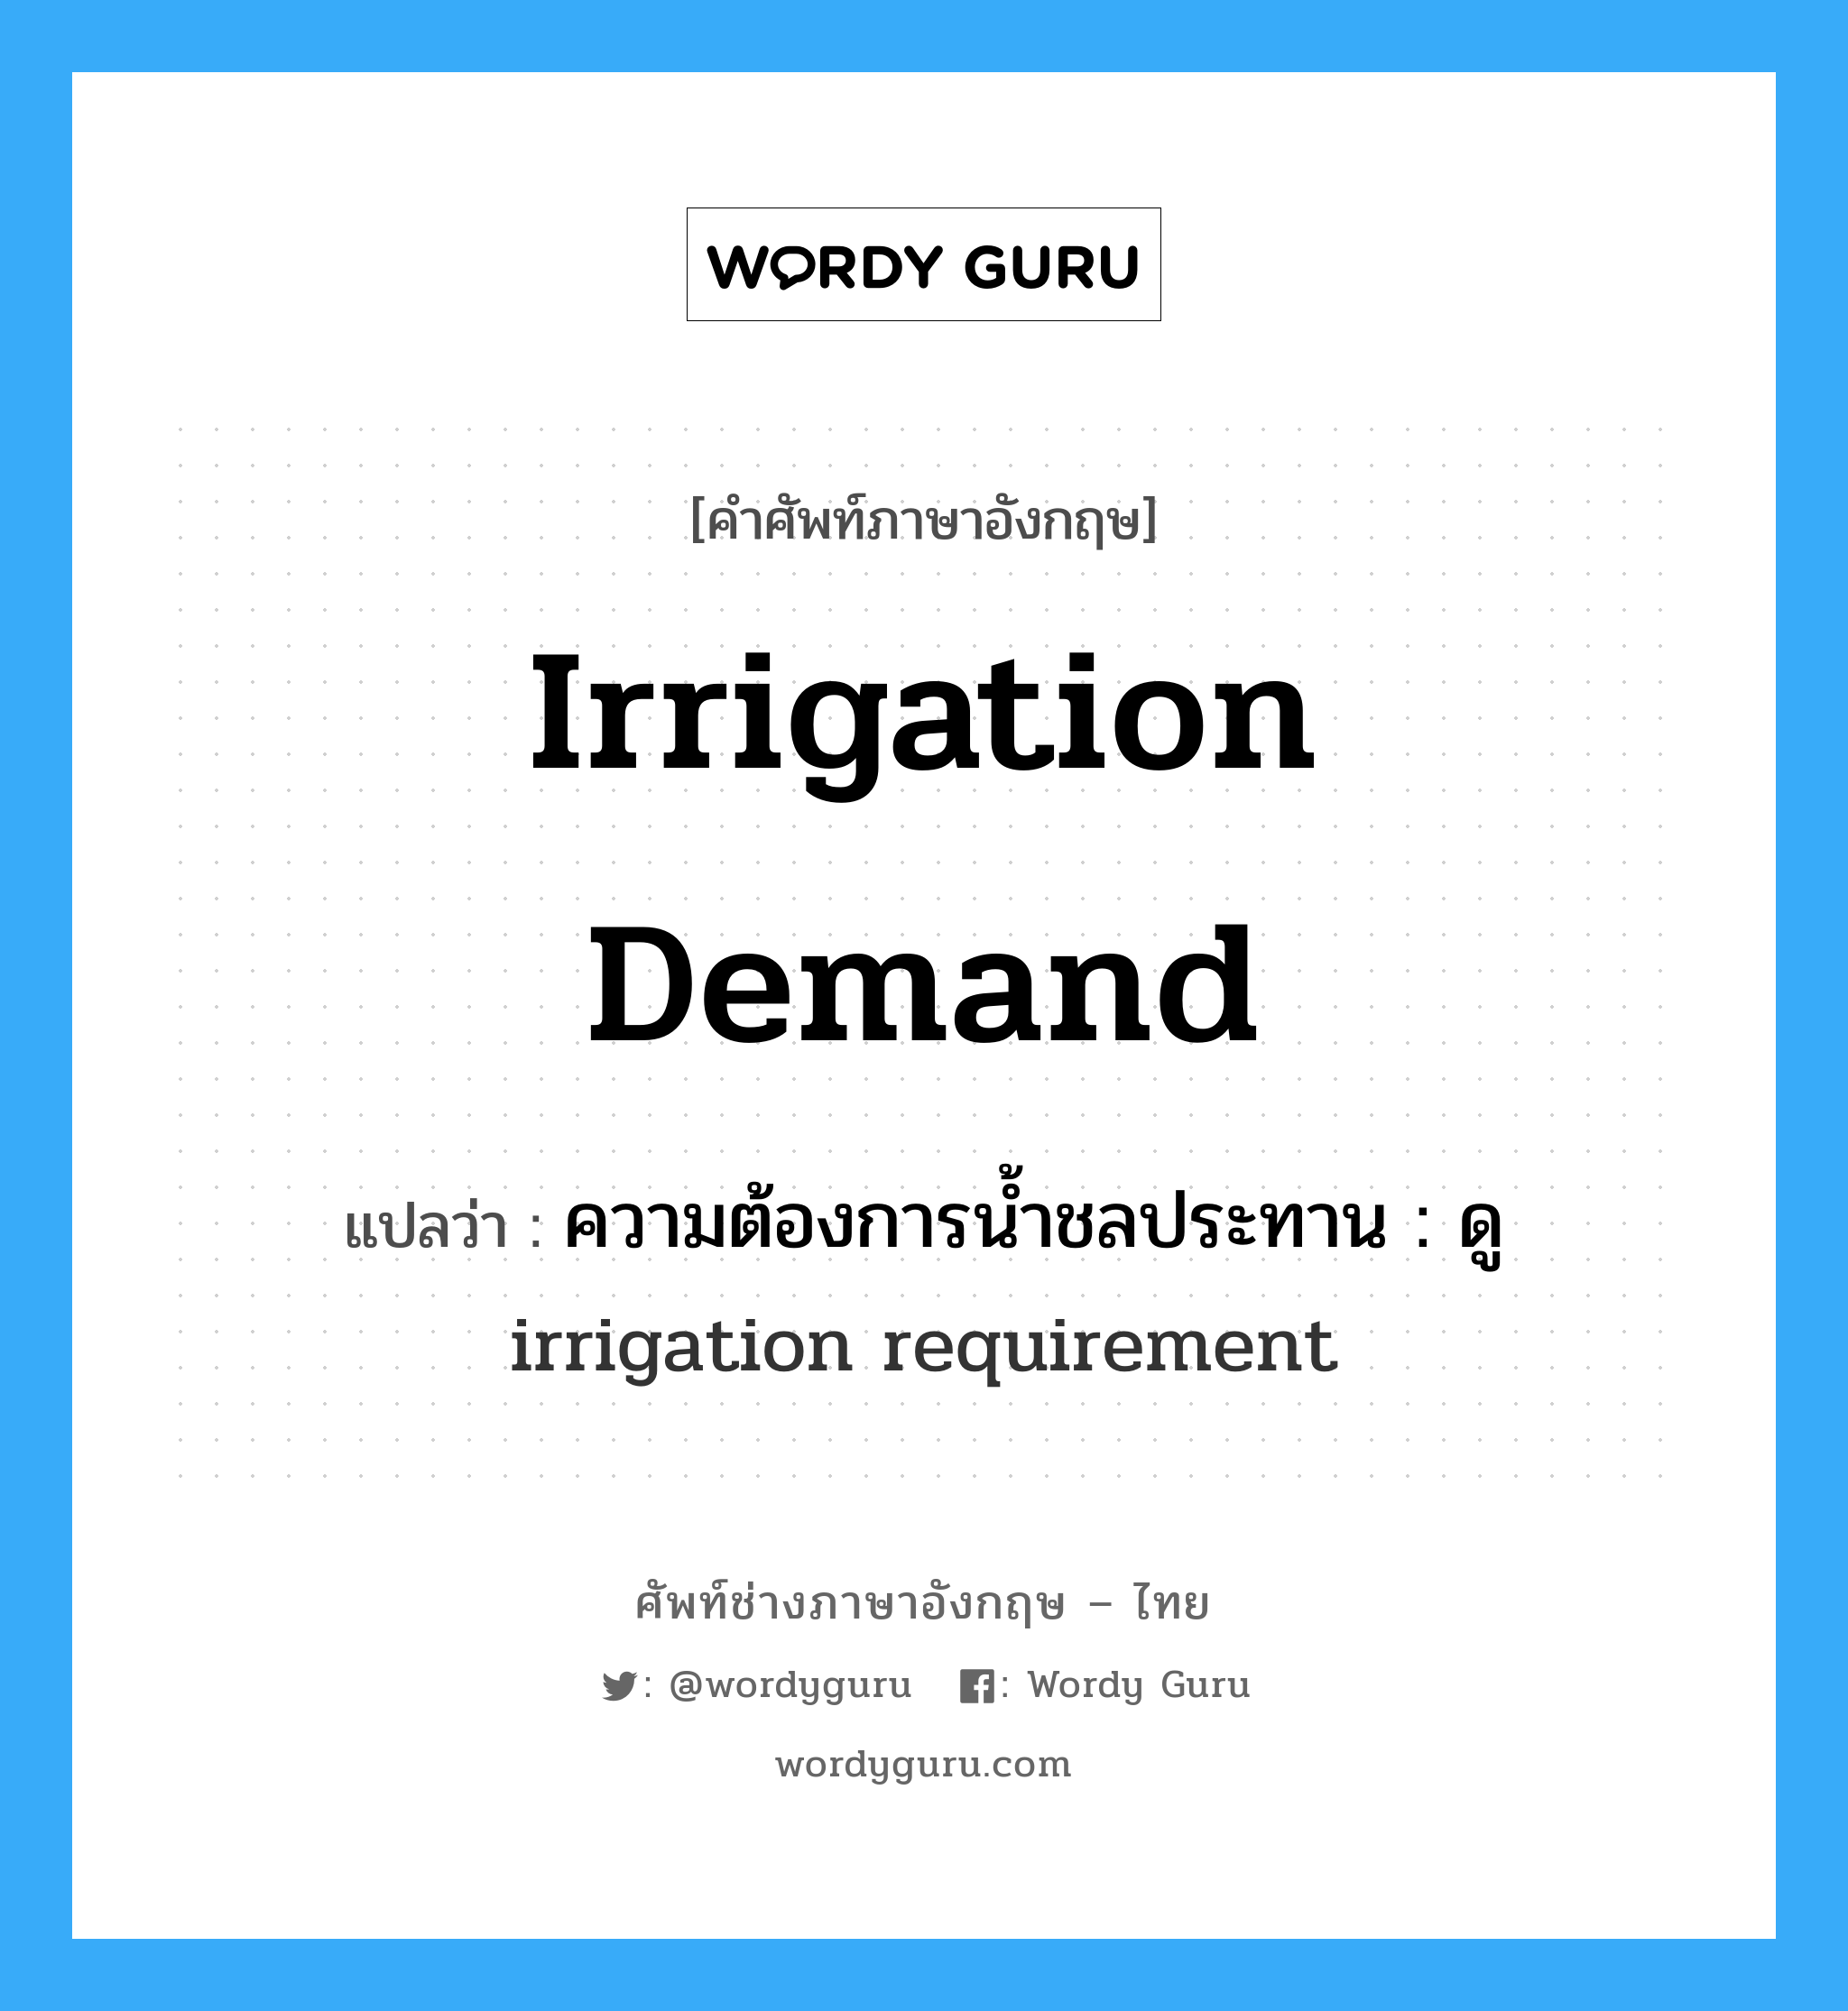 irrigation demand แปลว่า?, คำศัพท์ช่างภาษาอังกฤษ - ไทย irrigation demand คำศัพท์ภาษาอังกฤษ irrigation demand แปลว่า ความต้องการน้ำชลประทาน : ดู irrigation requirement